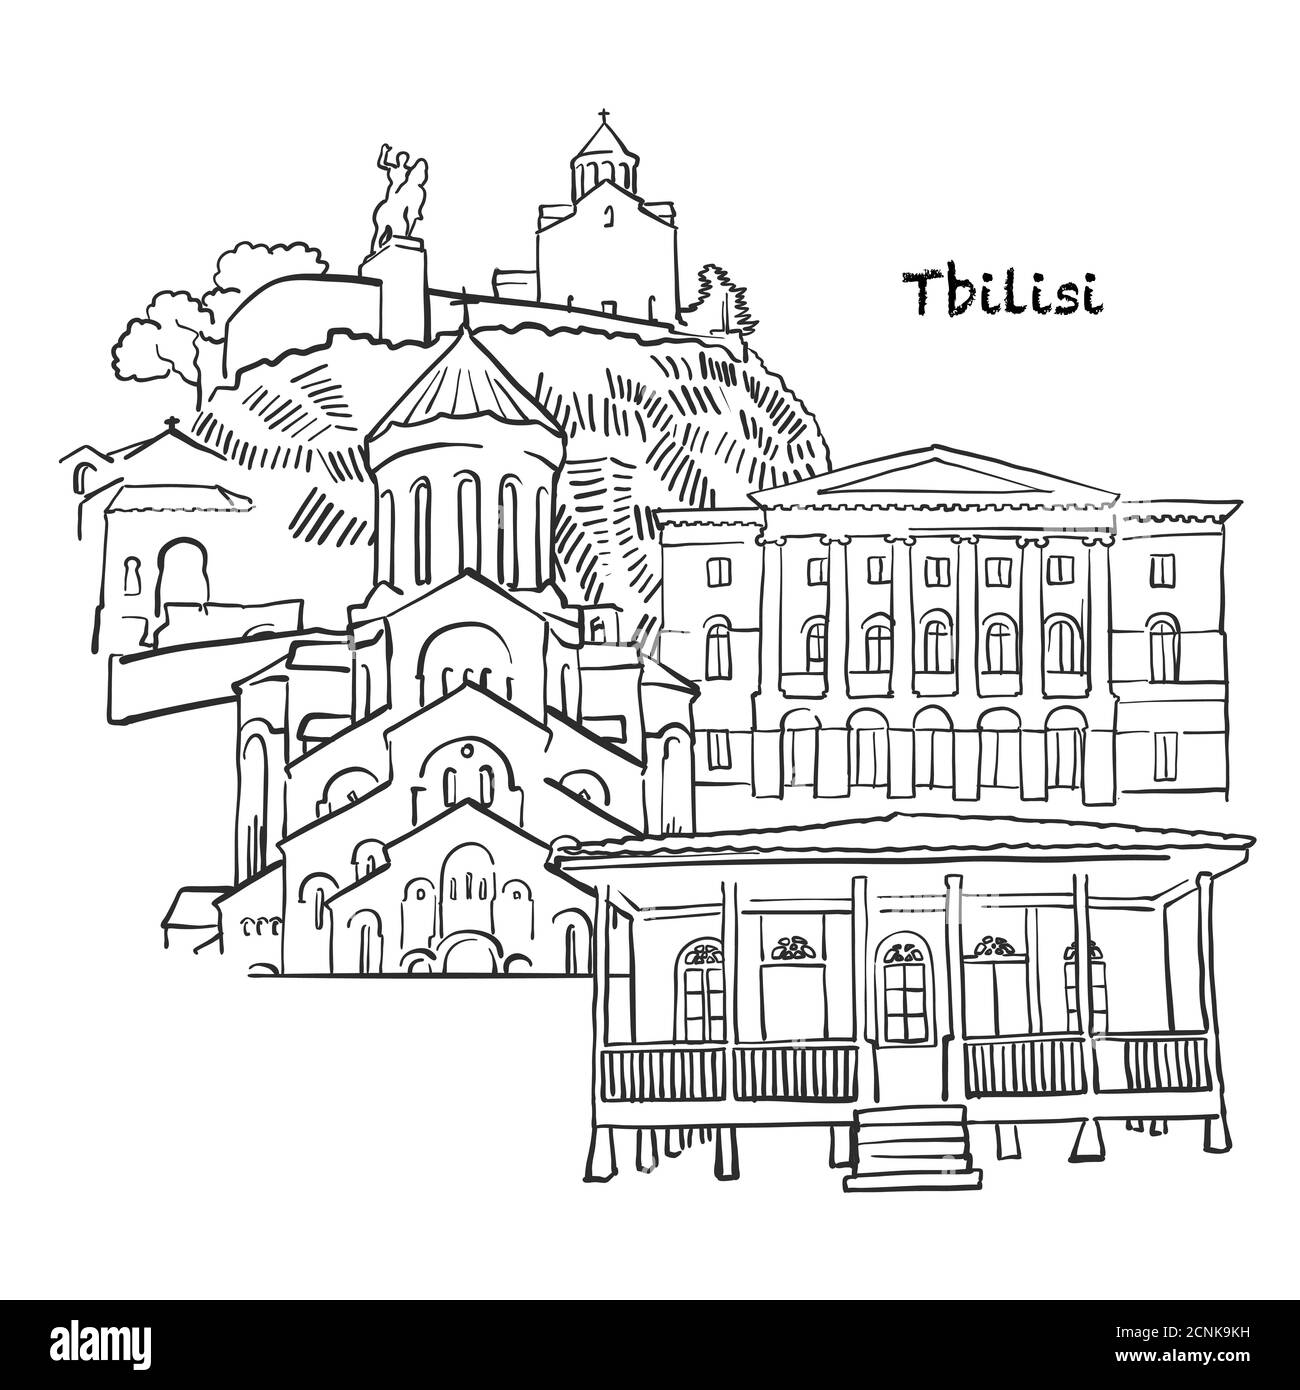 Berühmte Gebäude von Tiflis, Montenegro Zusammensetzung. Handgezeichnete schwarz-weiße Vektorgrafik. Gruppierte und bewegliche Objekte. Stock Vektor